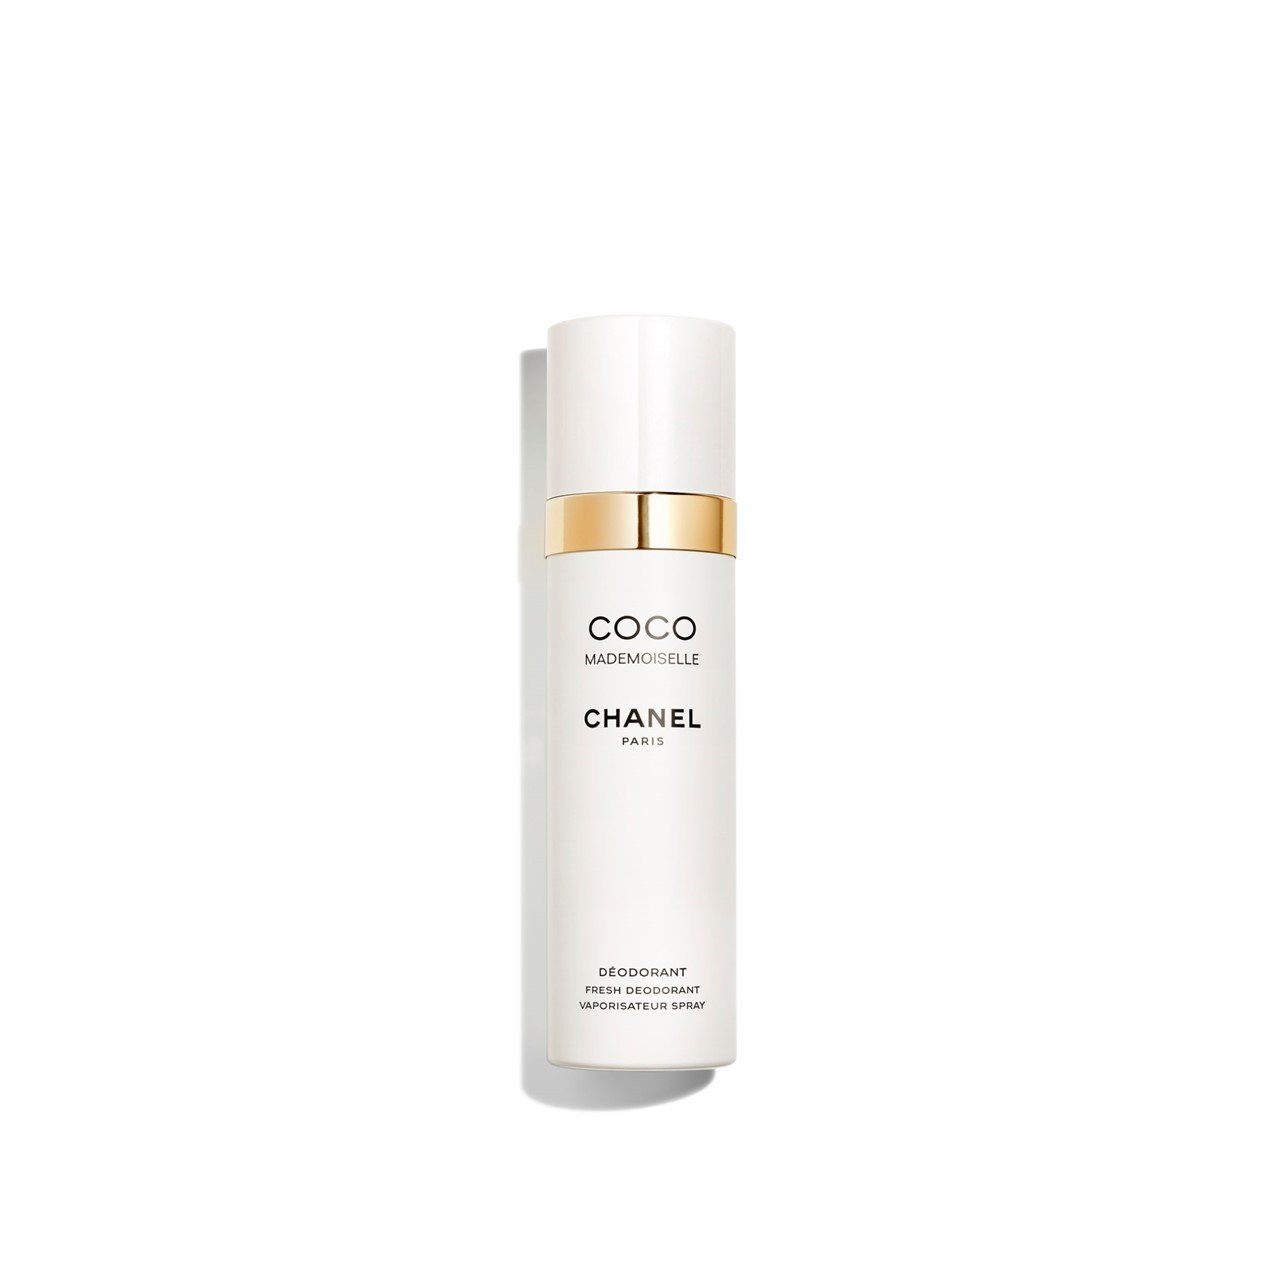 CHANEL Coco Mademoiselle Fresh Deodorant Spray 100ml (3.38fl oz)